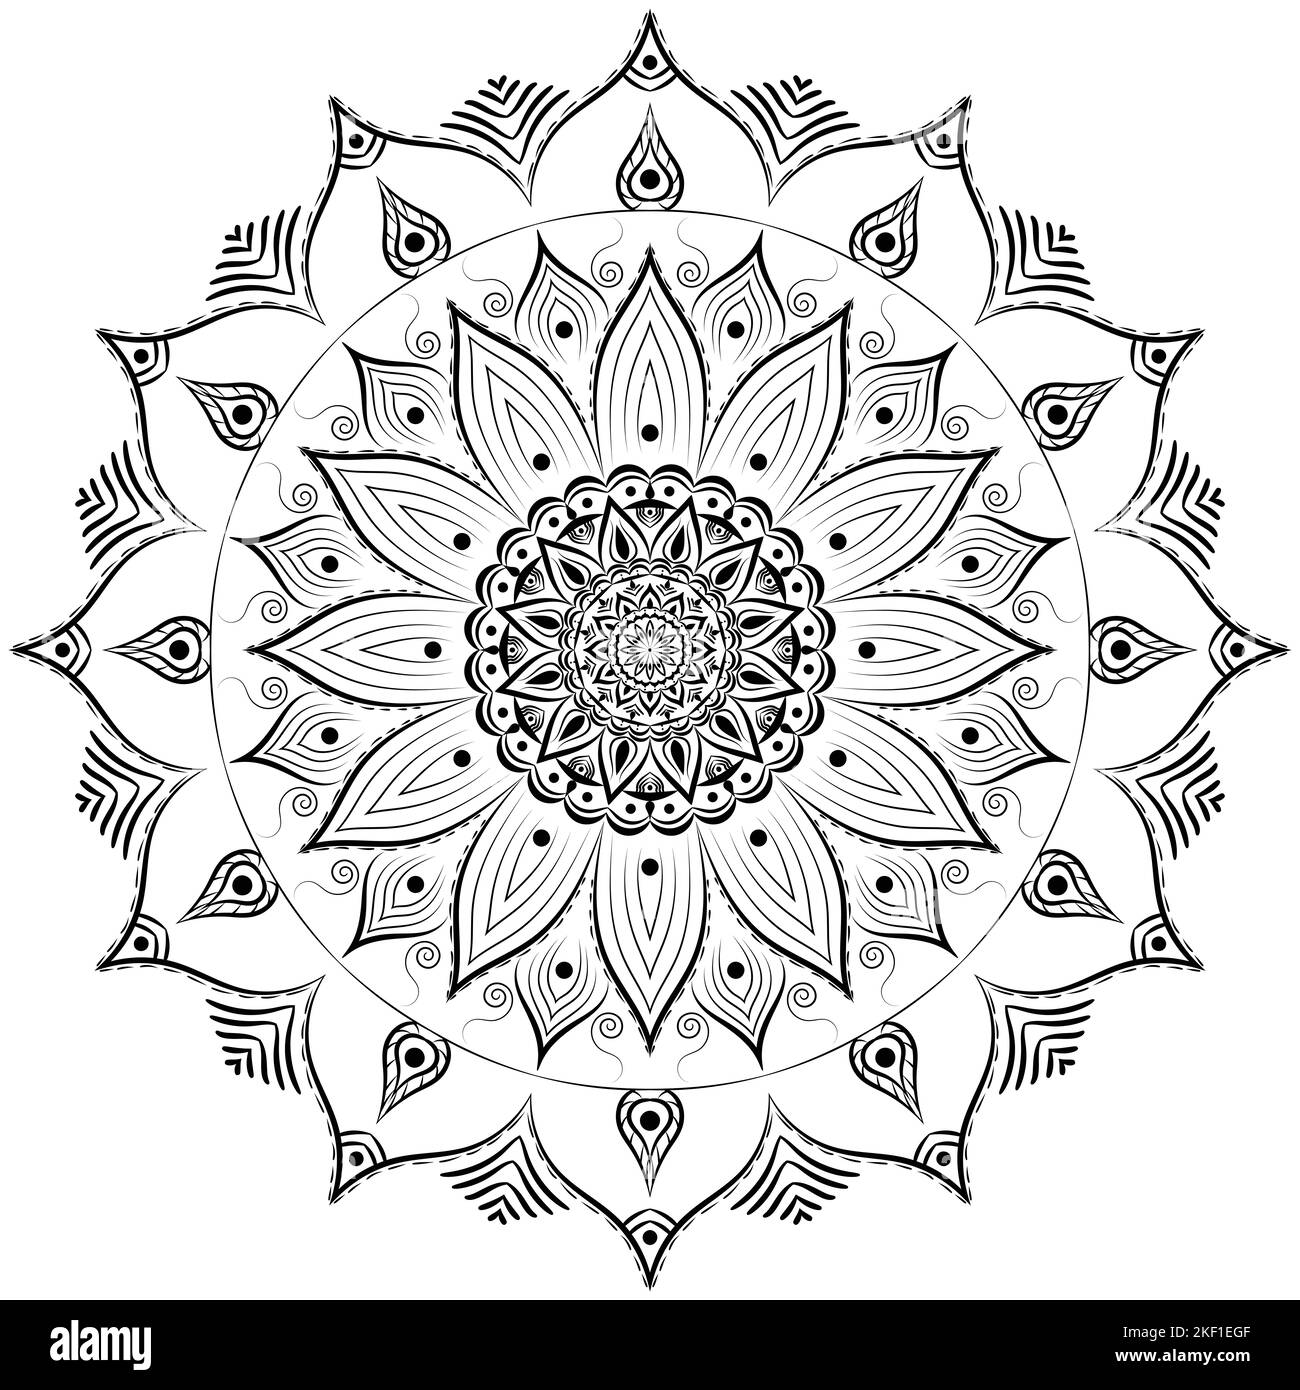 Bella indiano motivo floreale mandala arte isolato su uno sfondo bianco, elementi di decorazione per la meditazione poster o banner, tatuaggio arte Foto Stock